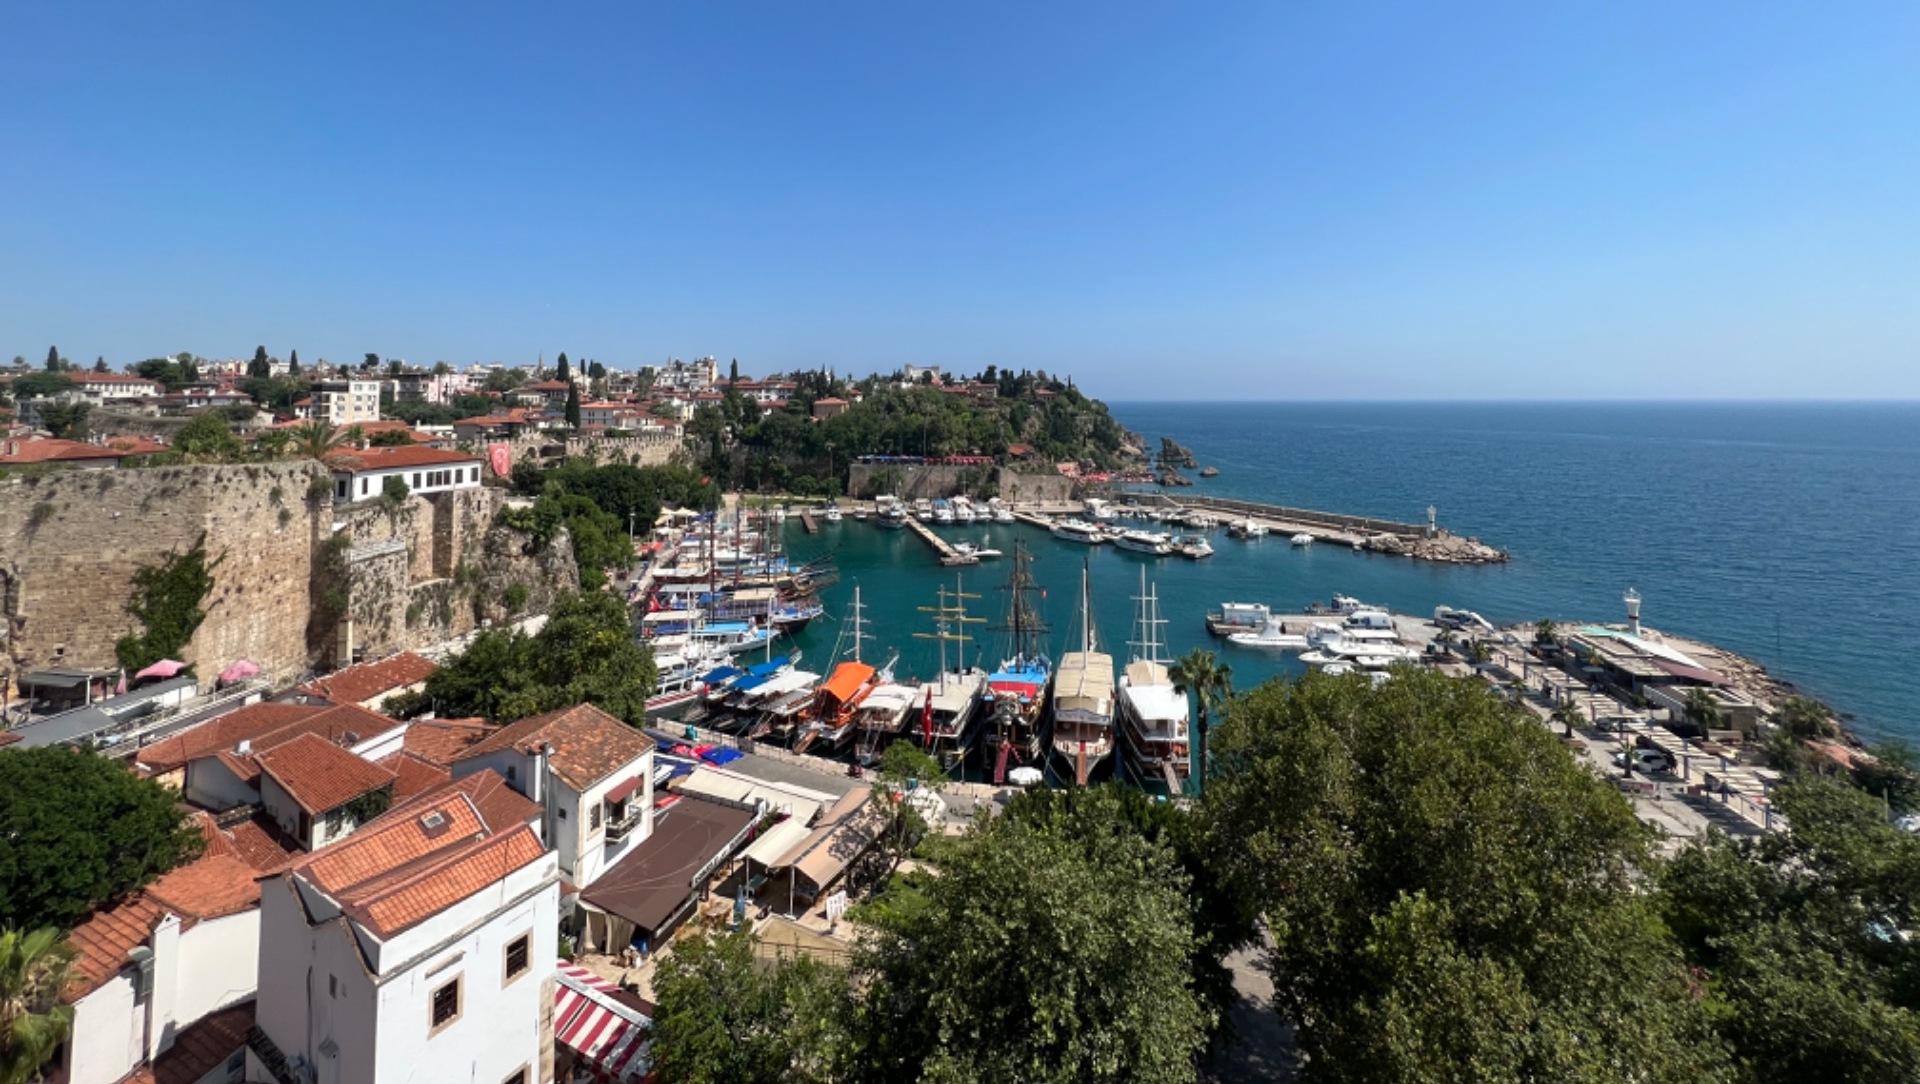 Личный опыт: как принимают россиян этим летом на курортах Турции